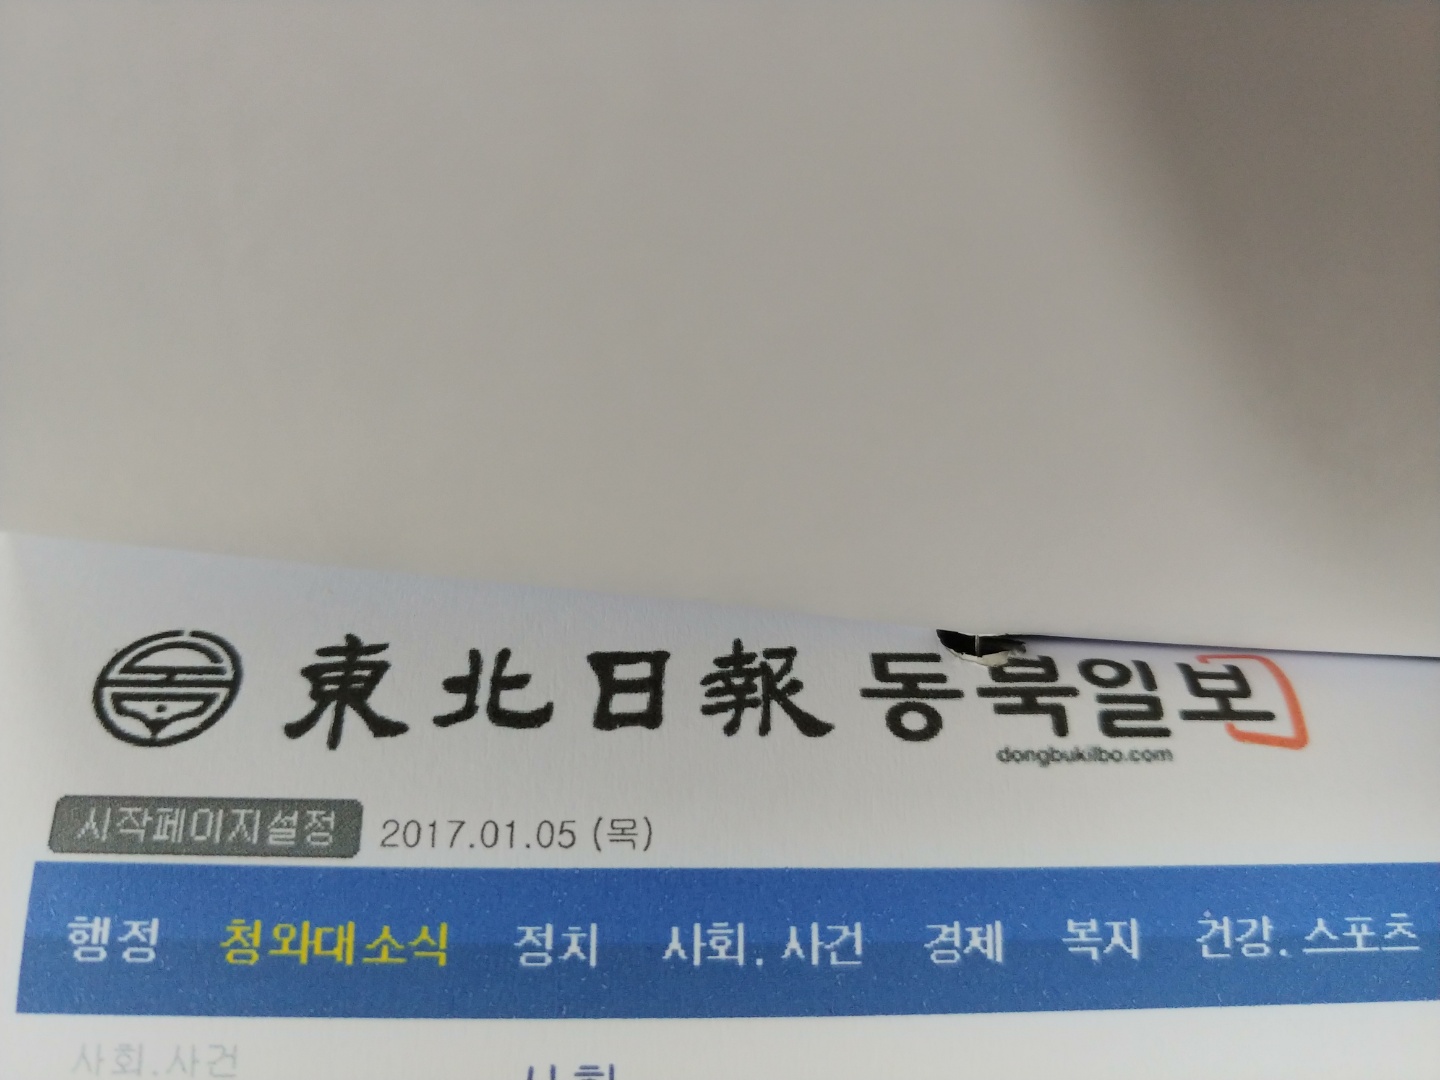 동북일보 새창열림